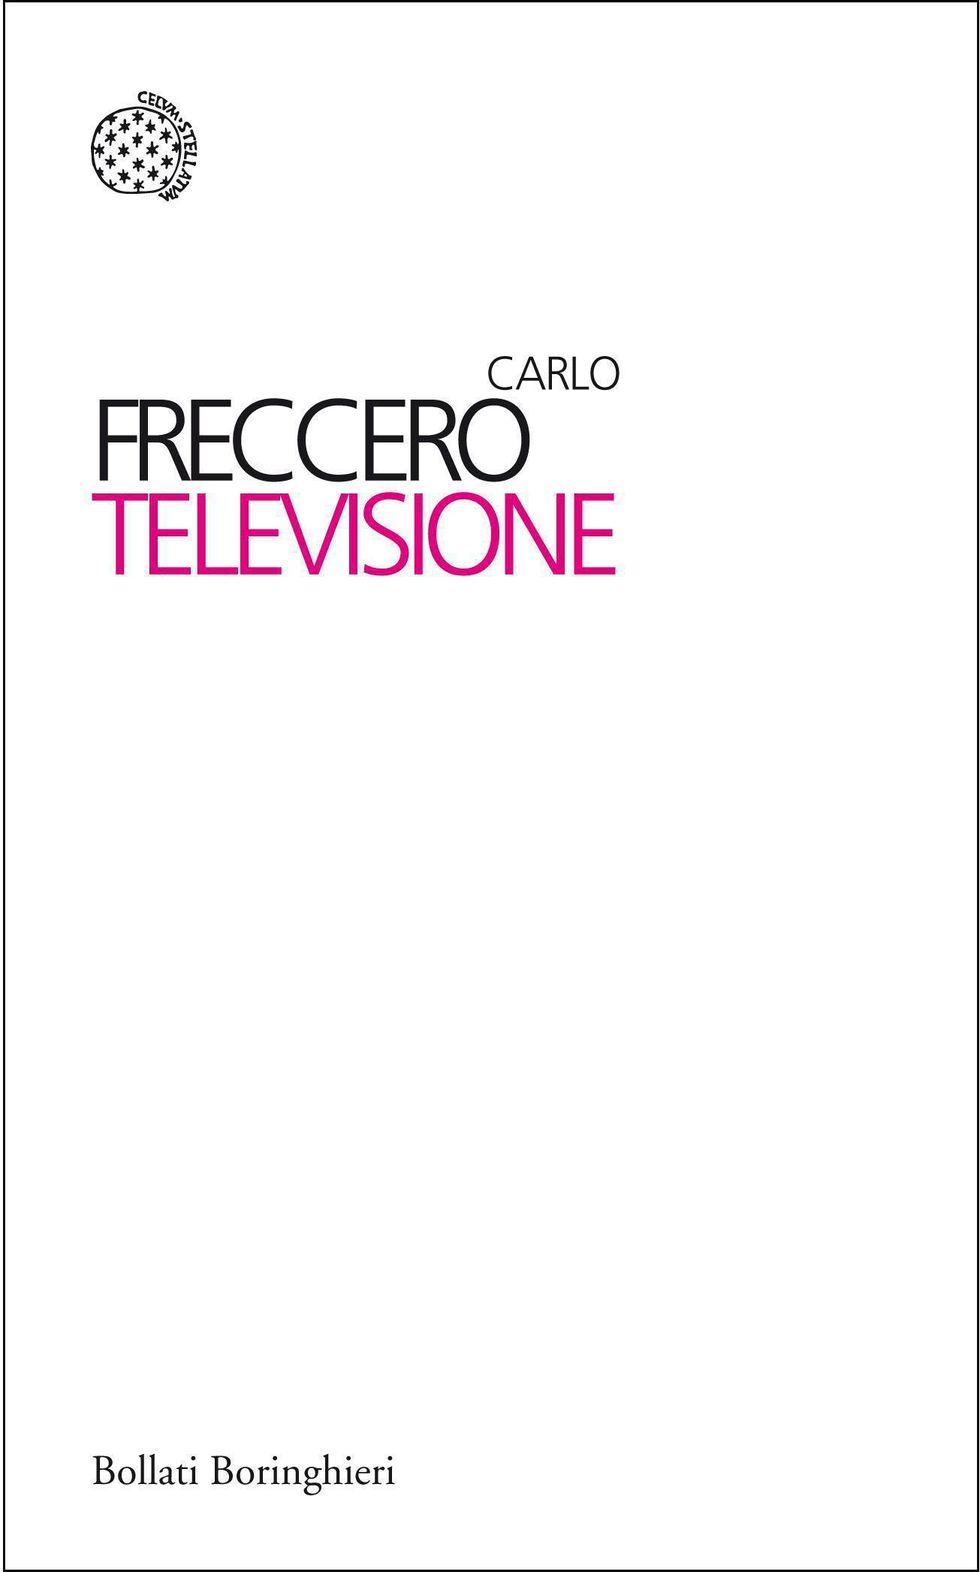 Televisione, di Carlo Freccero